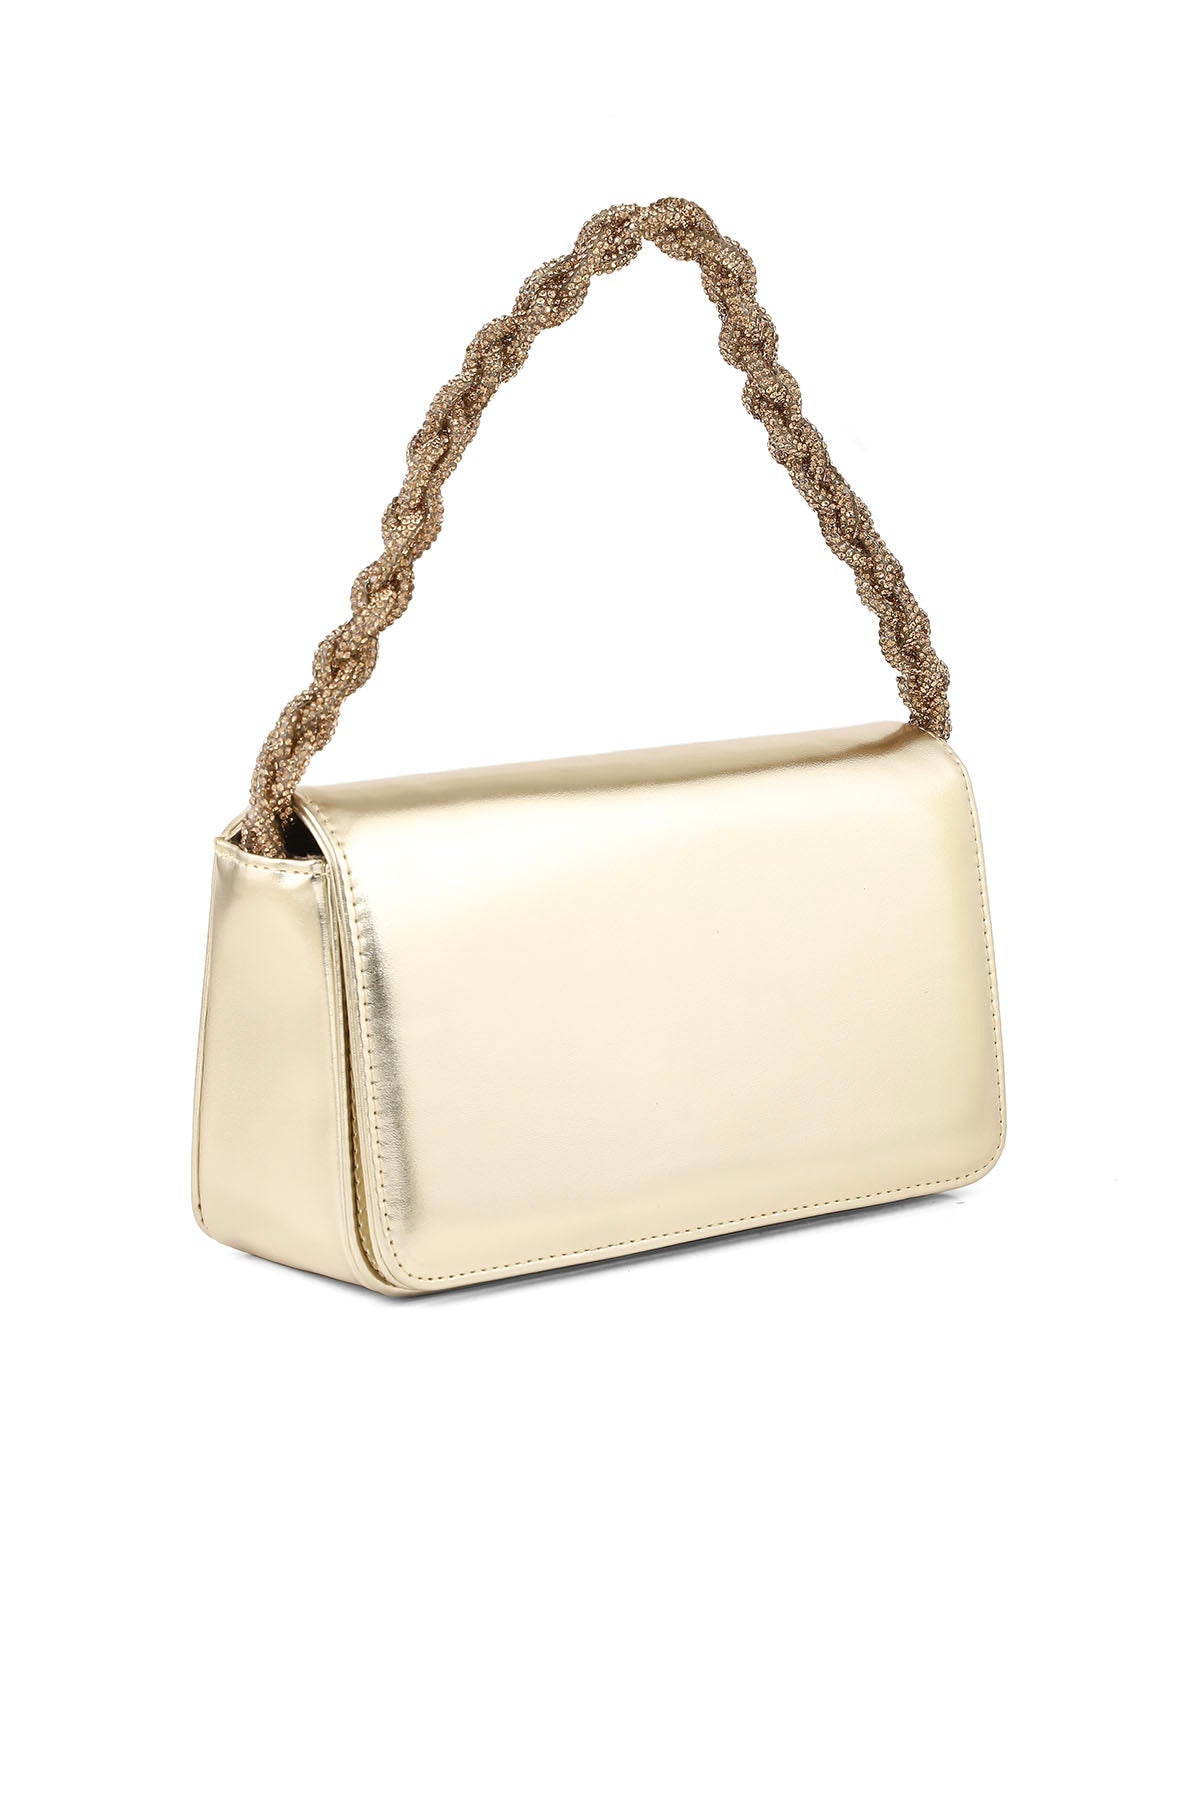 Baguette Shoulder Bags B20761-Golden